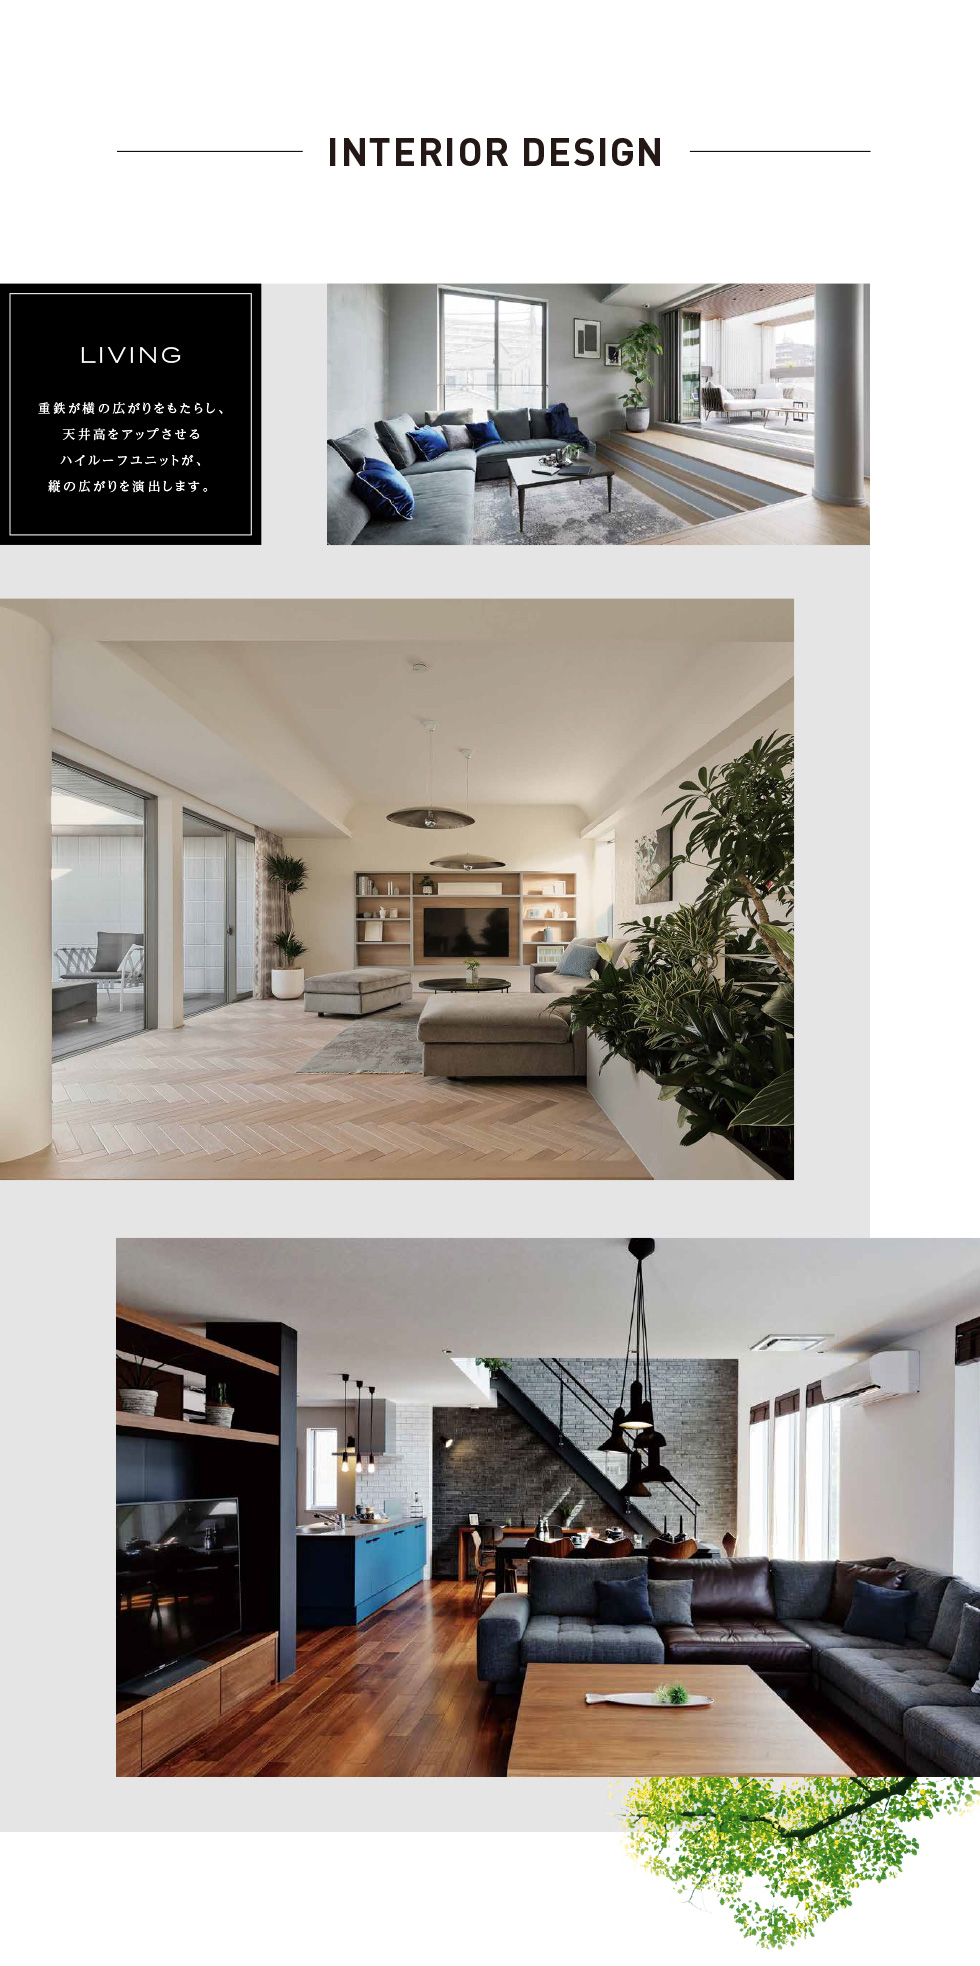 Interior Design Living